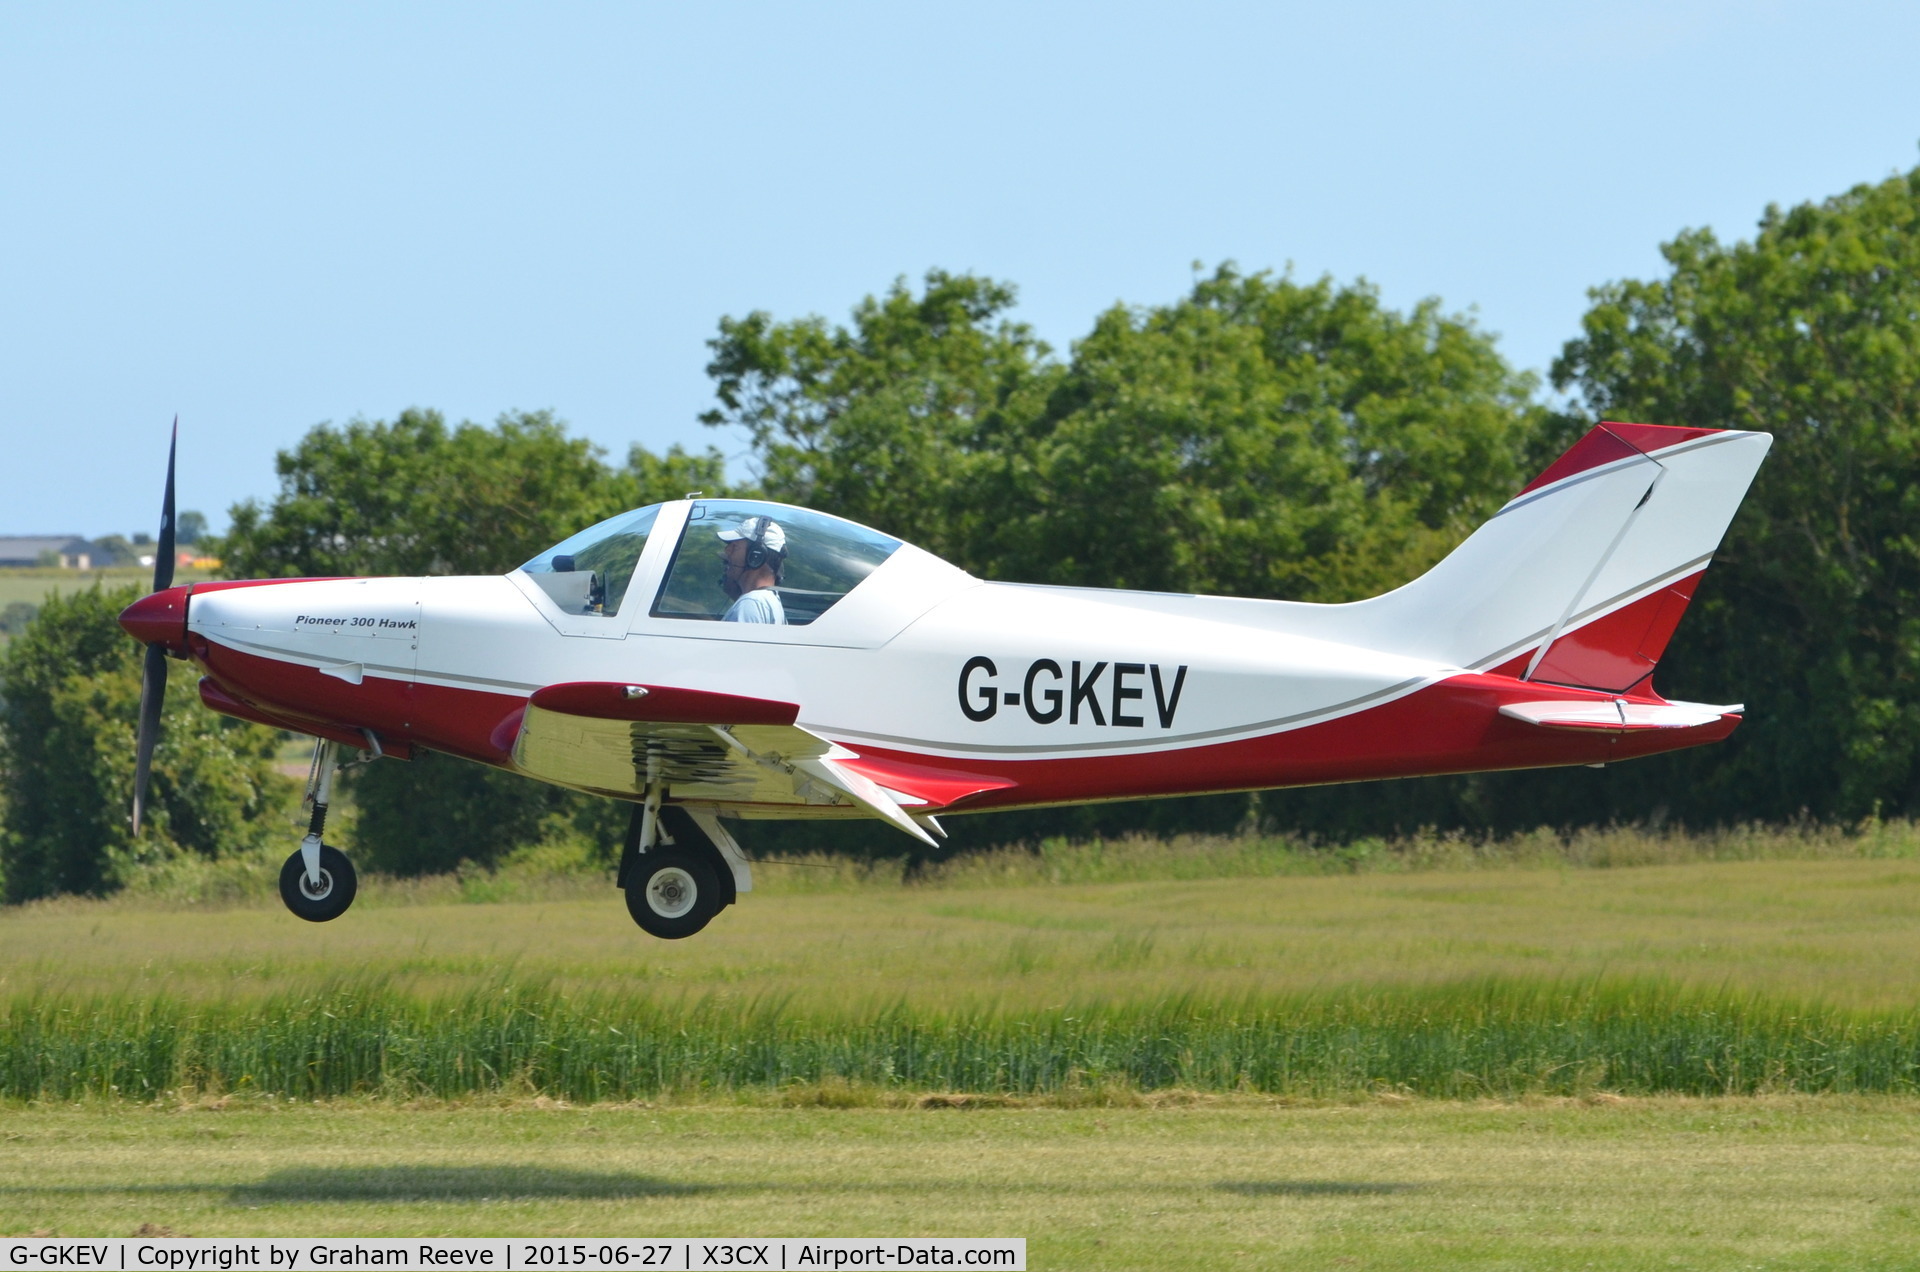 G-GKEV, 2010 Alpi Aviation Pioneer 300 Hawk C/N LAA 330A-14965, Landing at Northrepps.